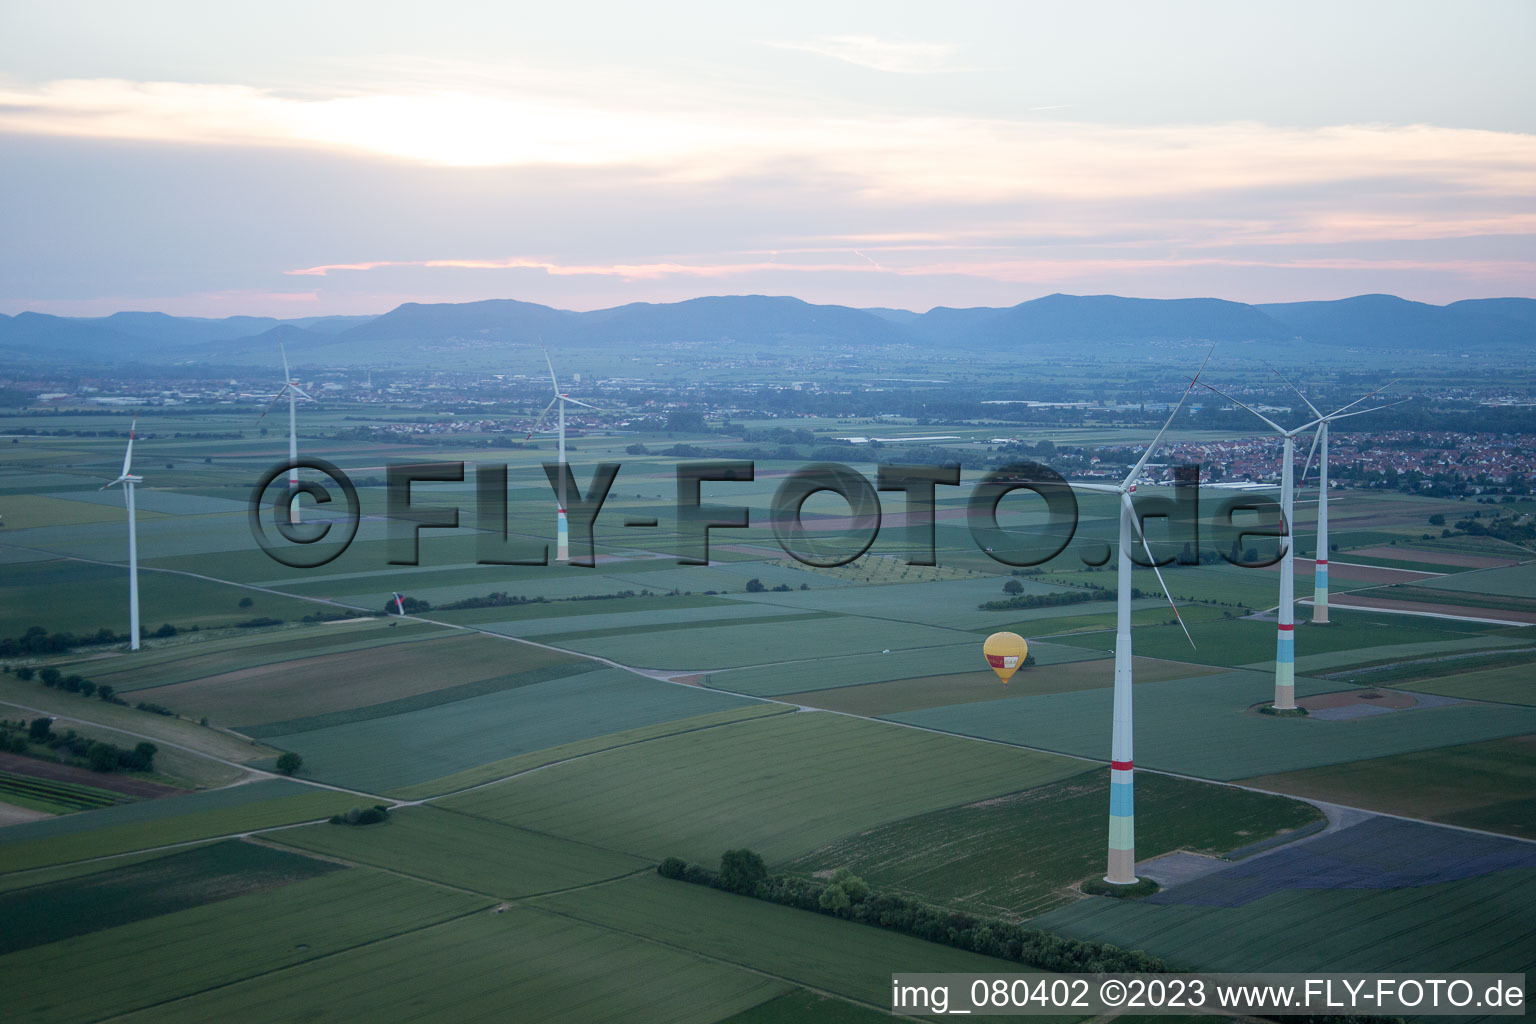 Vue aérienne de Montgolfière entre les éoliennes à Offenbach an der Queich dans le département Rhénanie-Palatinat, Allemagne